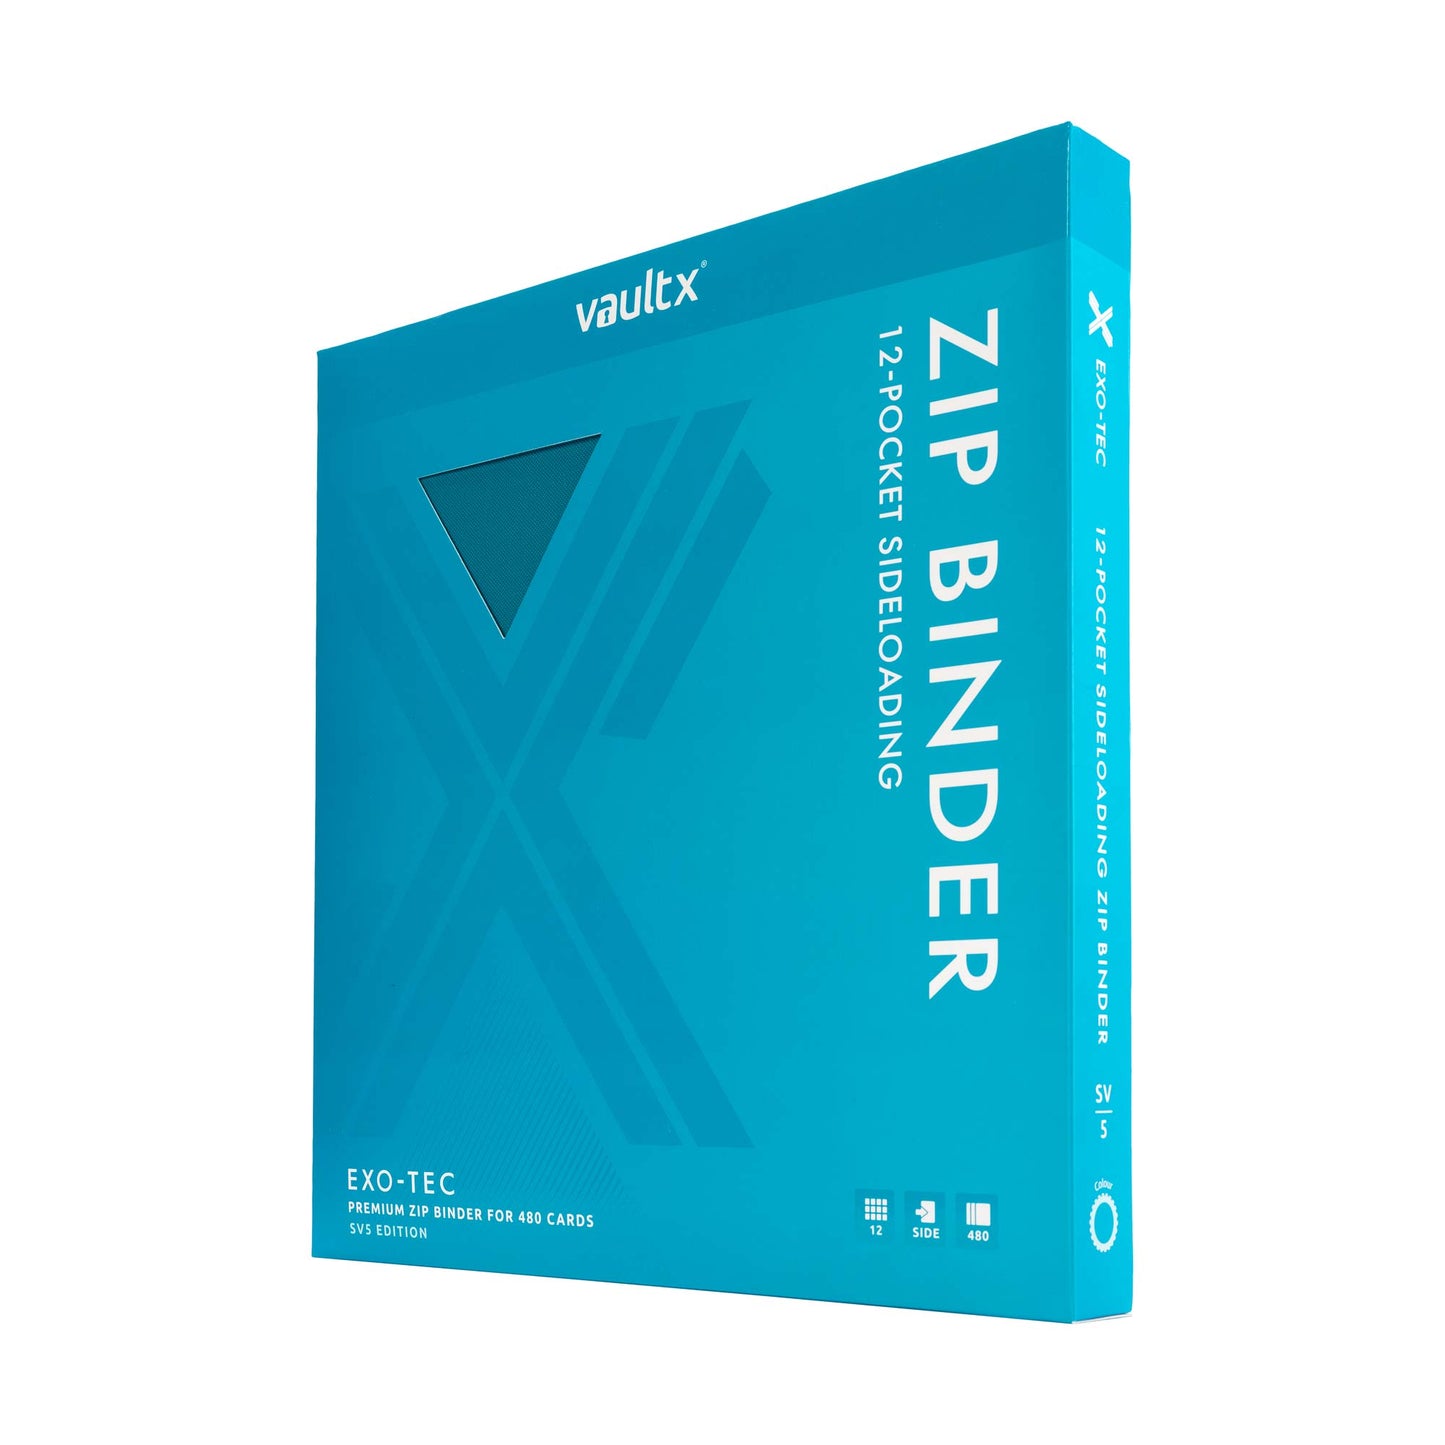 12-Pocket Exo-Tec® Zip Binder SV5